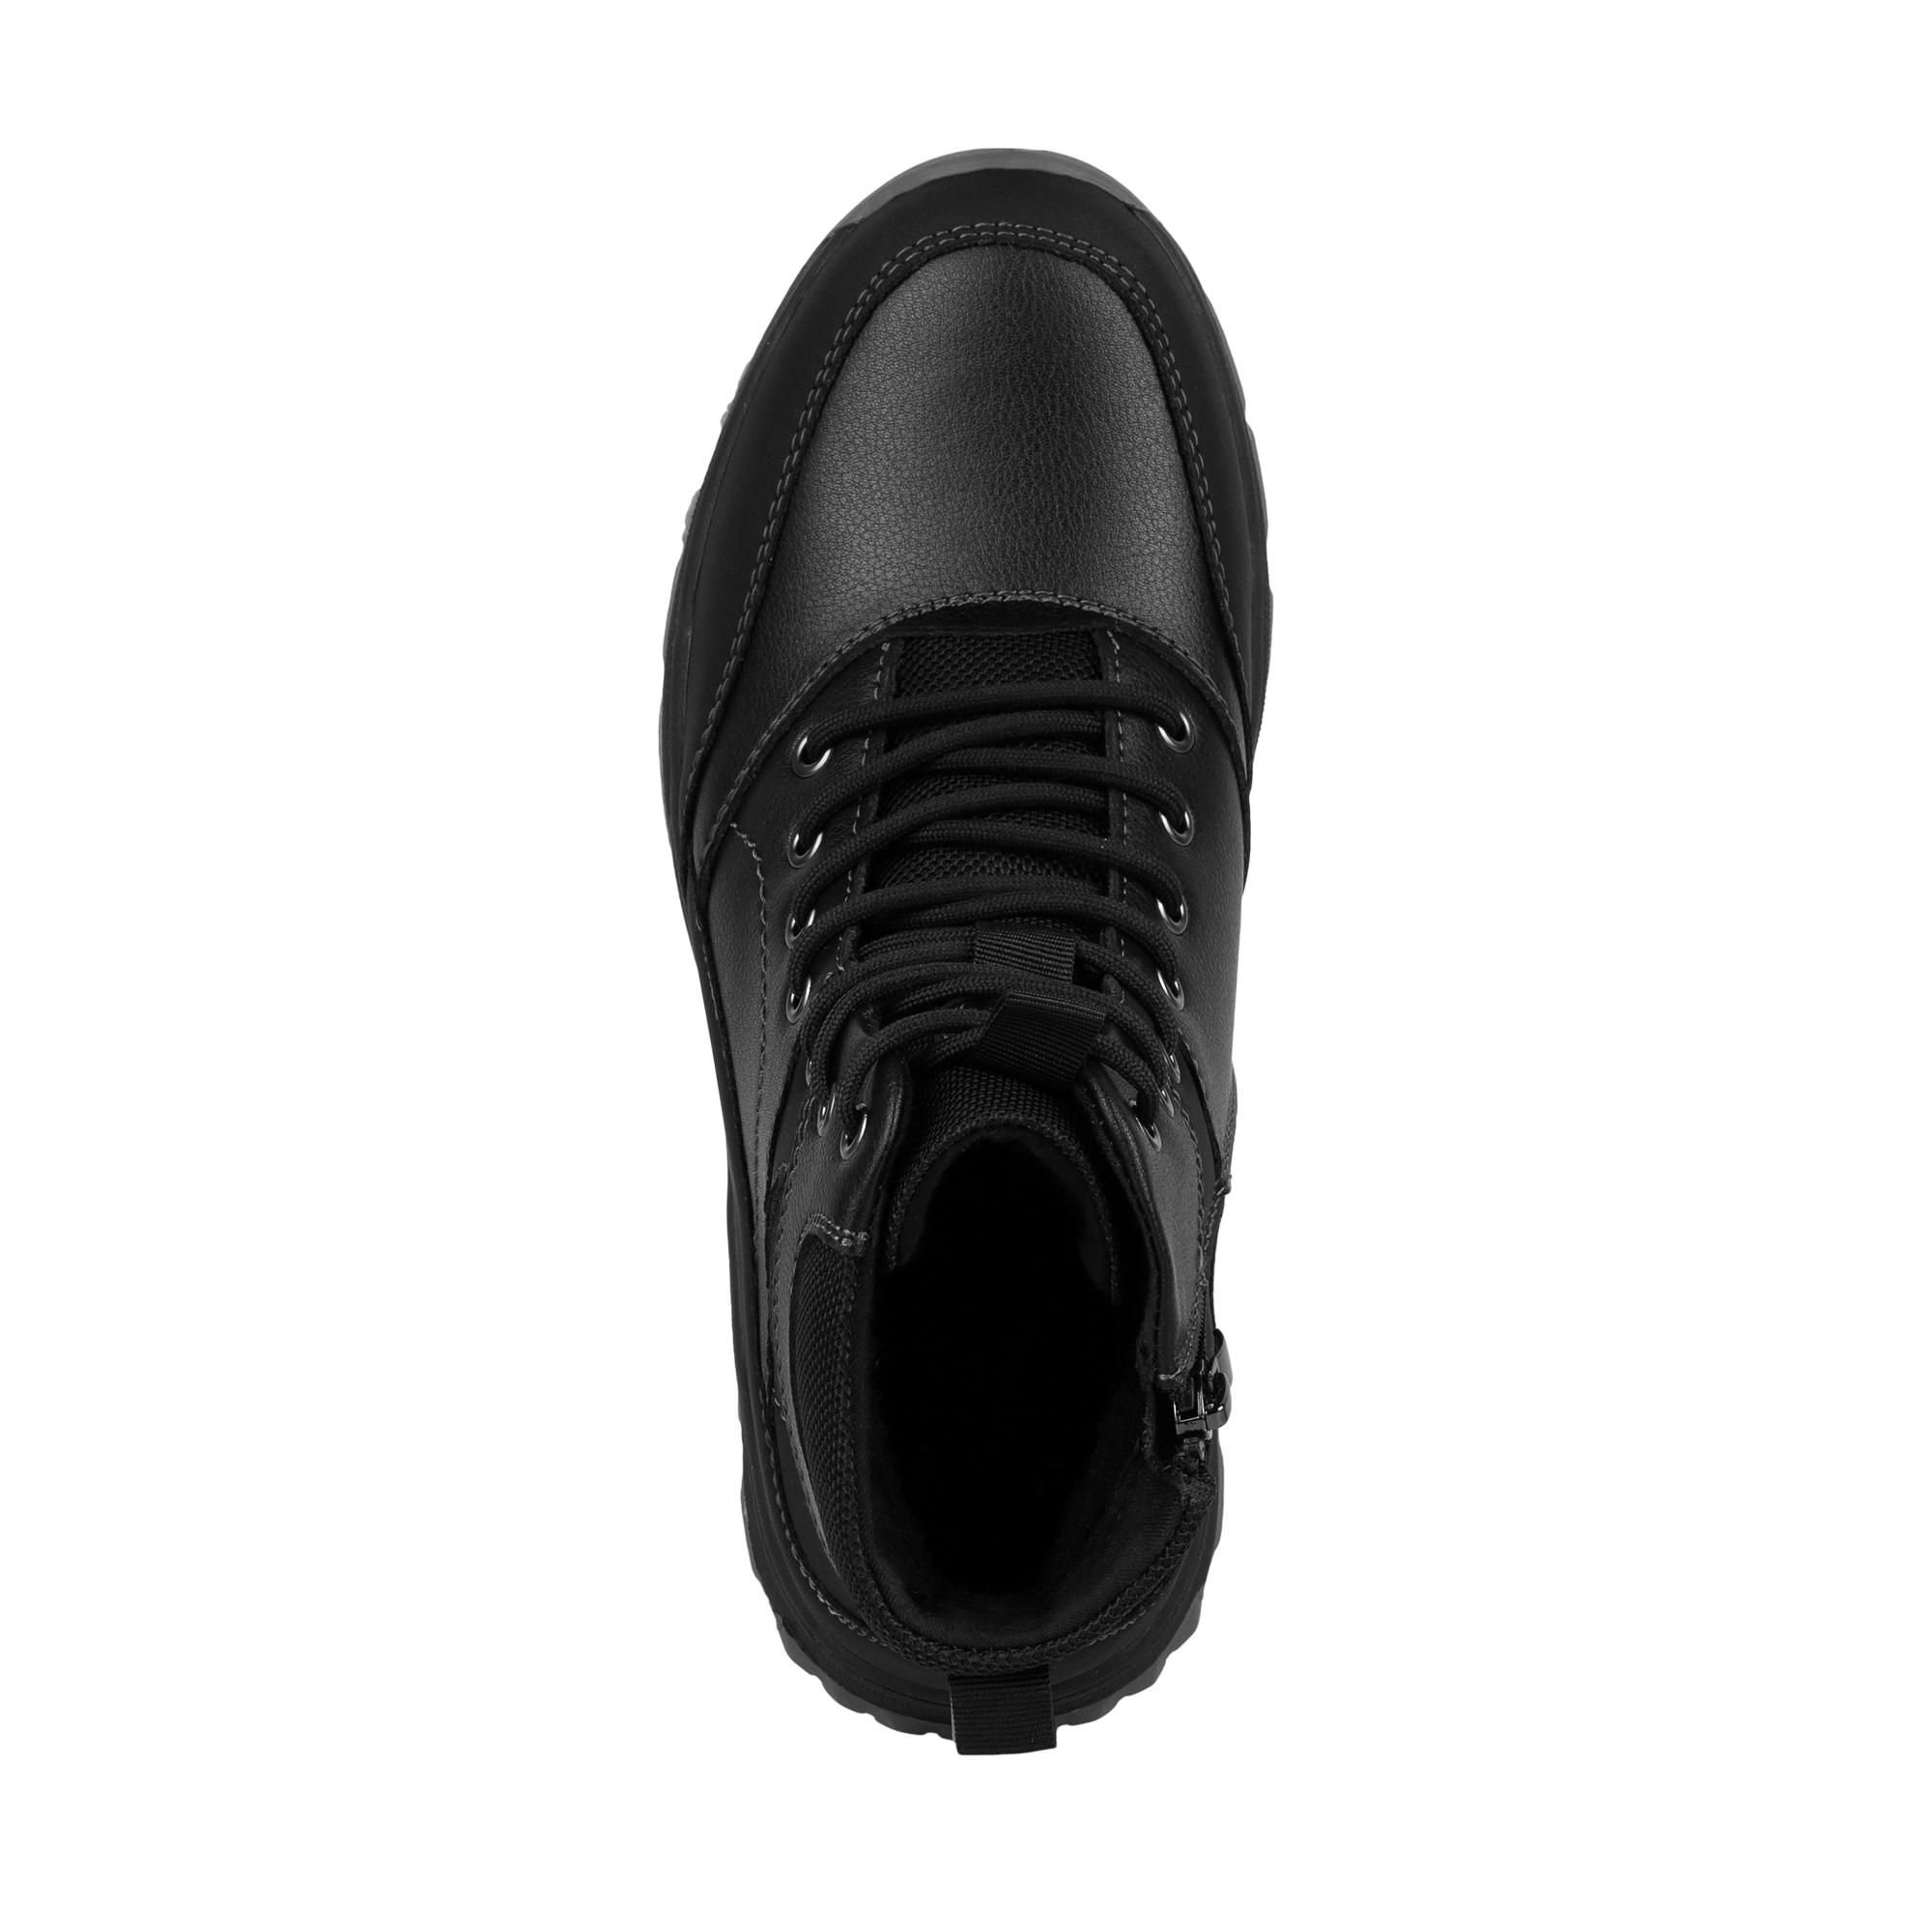 Обувь для мальчиков MUNZ YOUNG 098-3450A-5602, цвет черный, размер 34 - фото 5